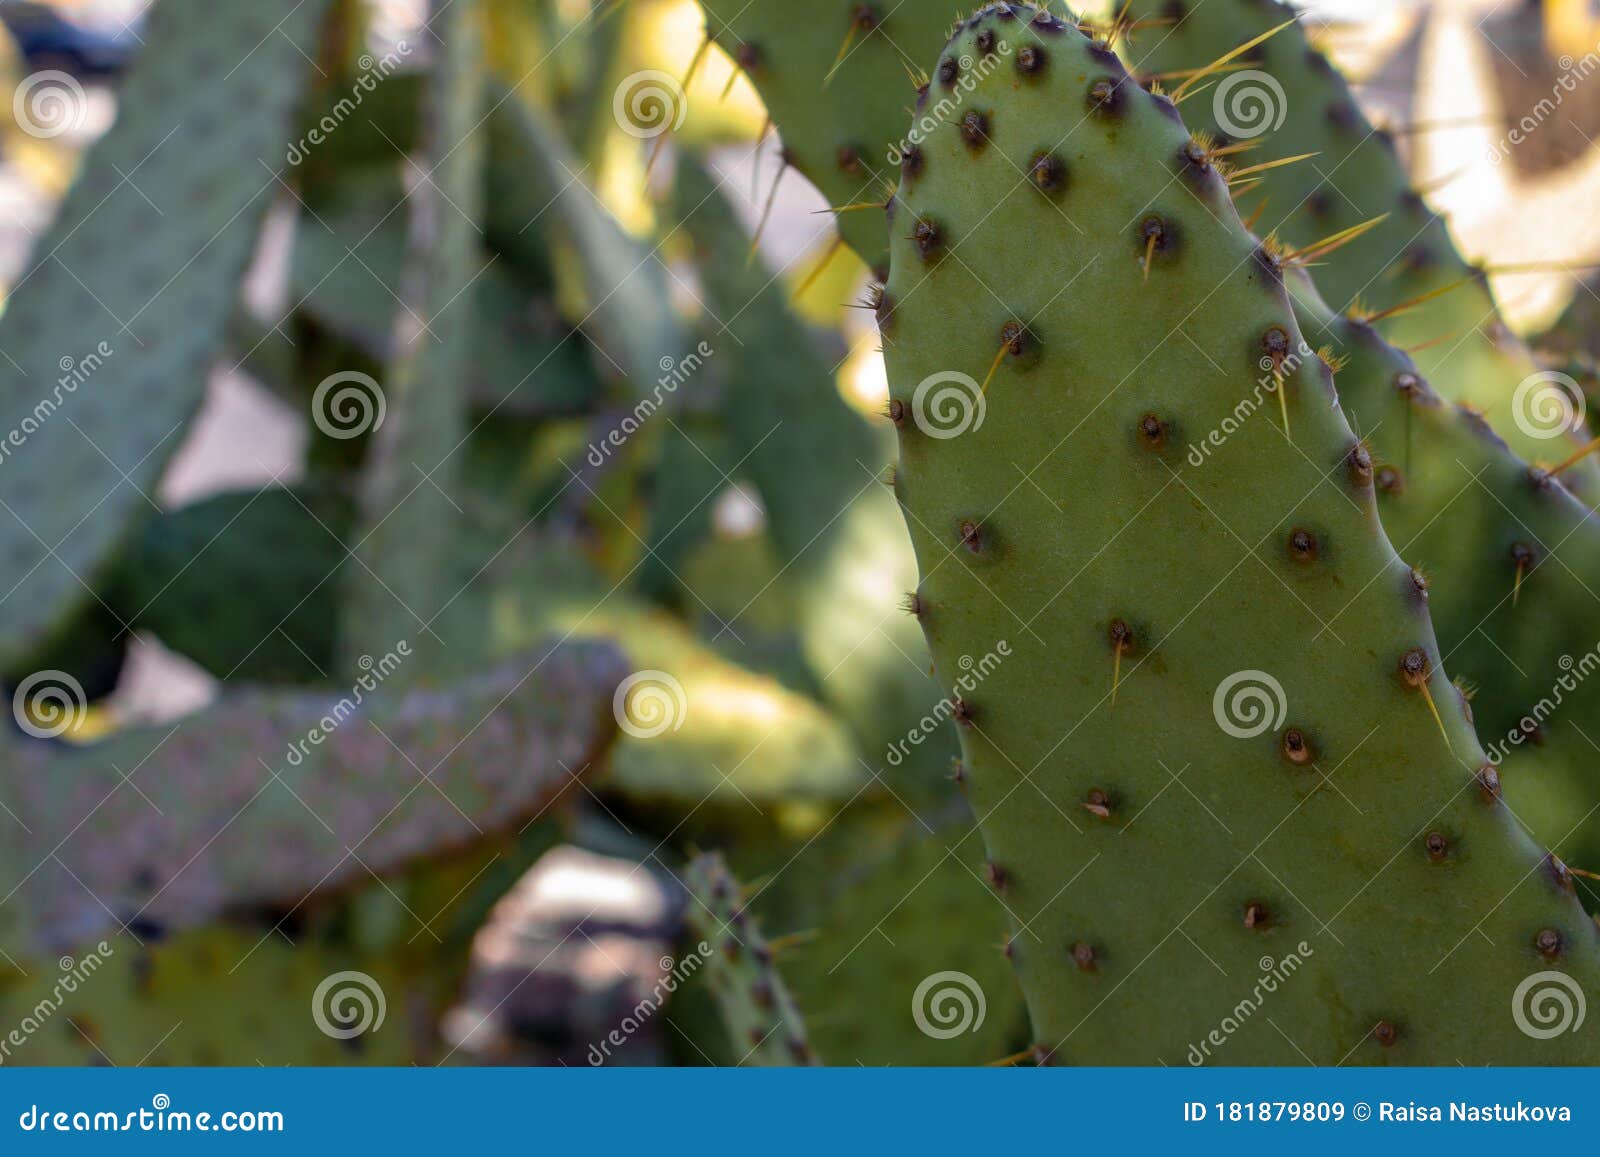 cow`s tongue prickly pear cactus or lengua de vaca cactus